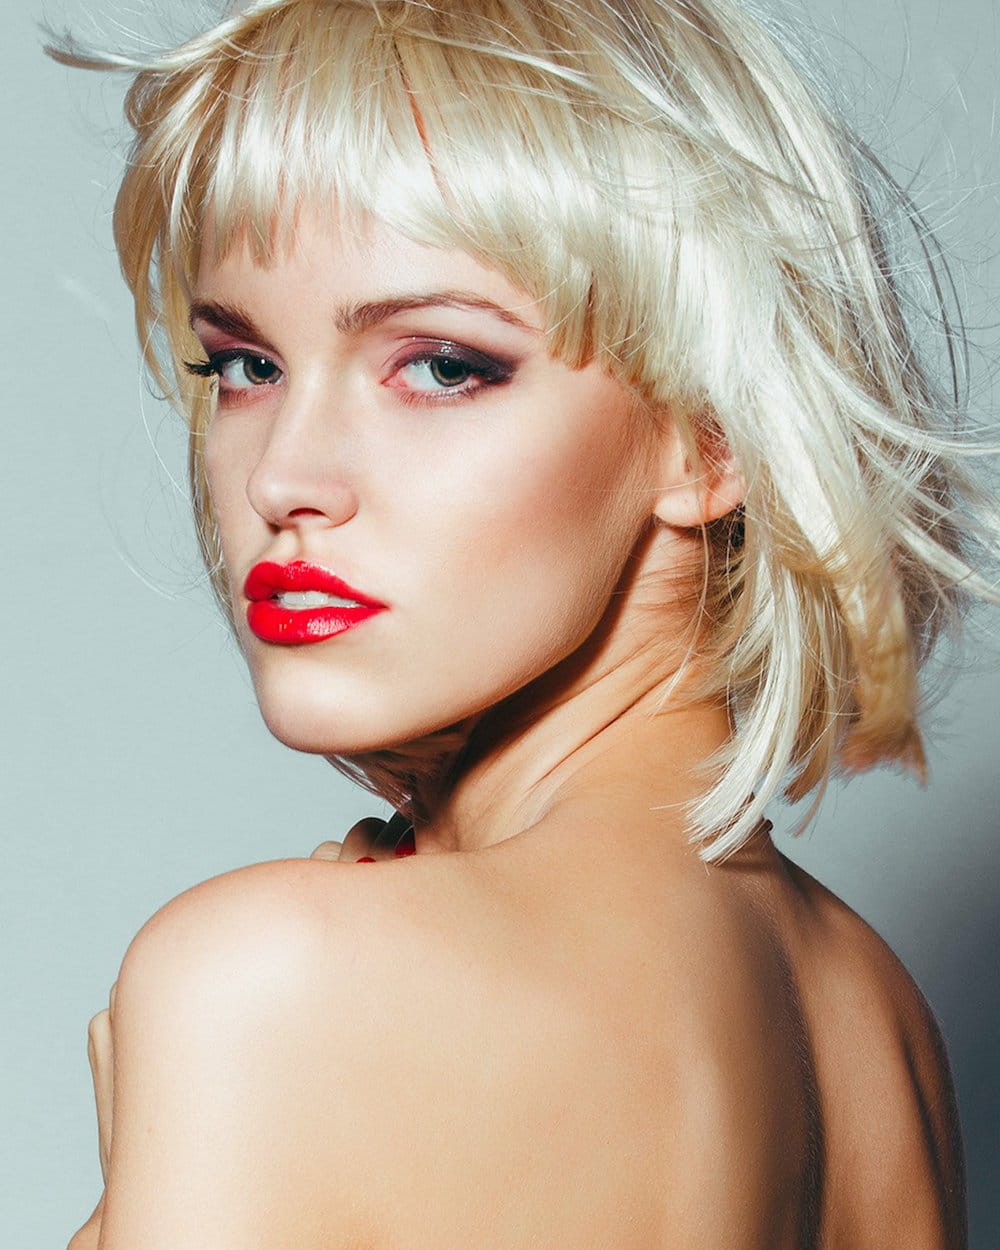 ballancerpro patient model looking over her shoulder wearing bright red lipstick